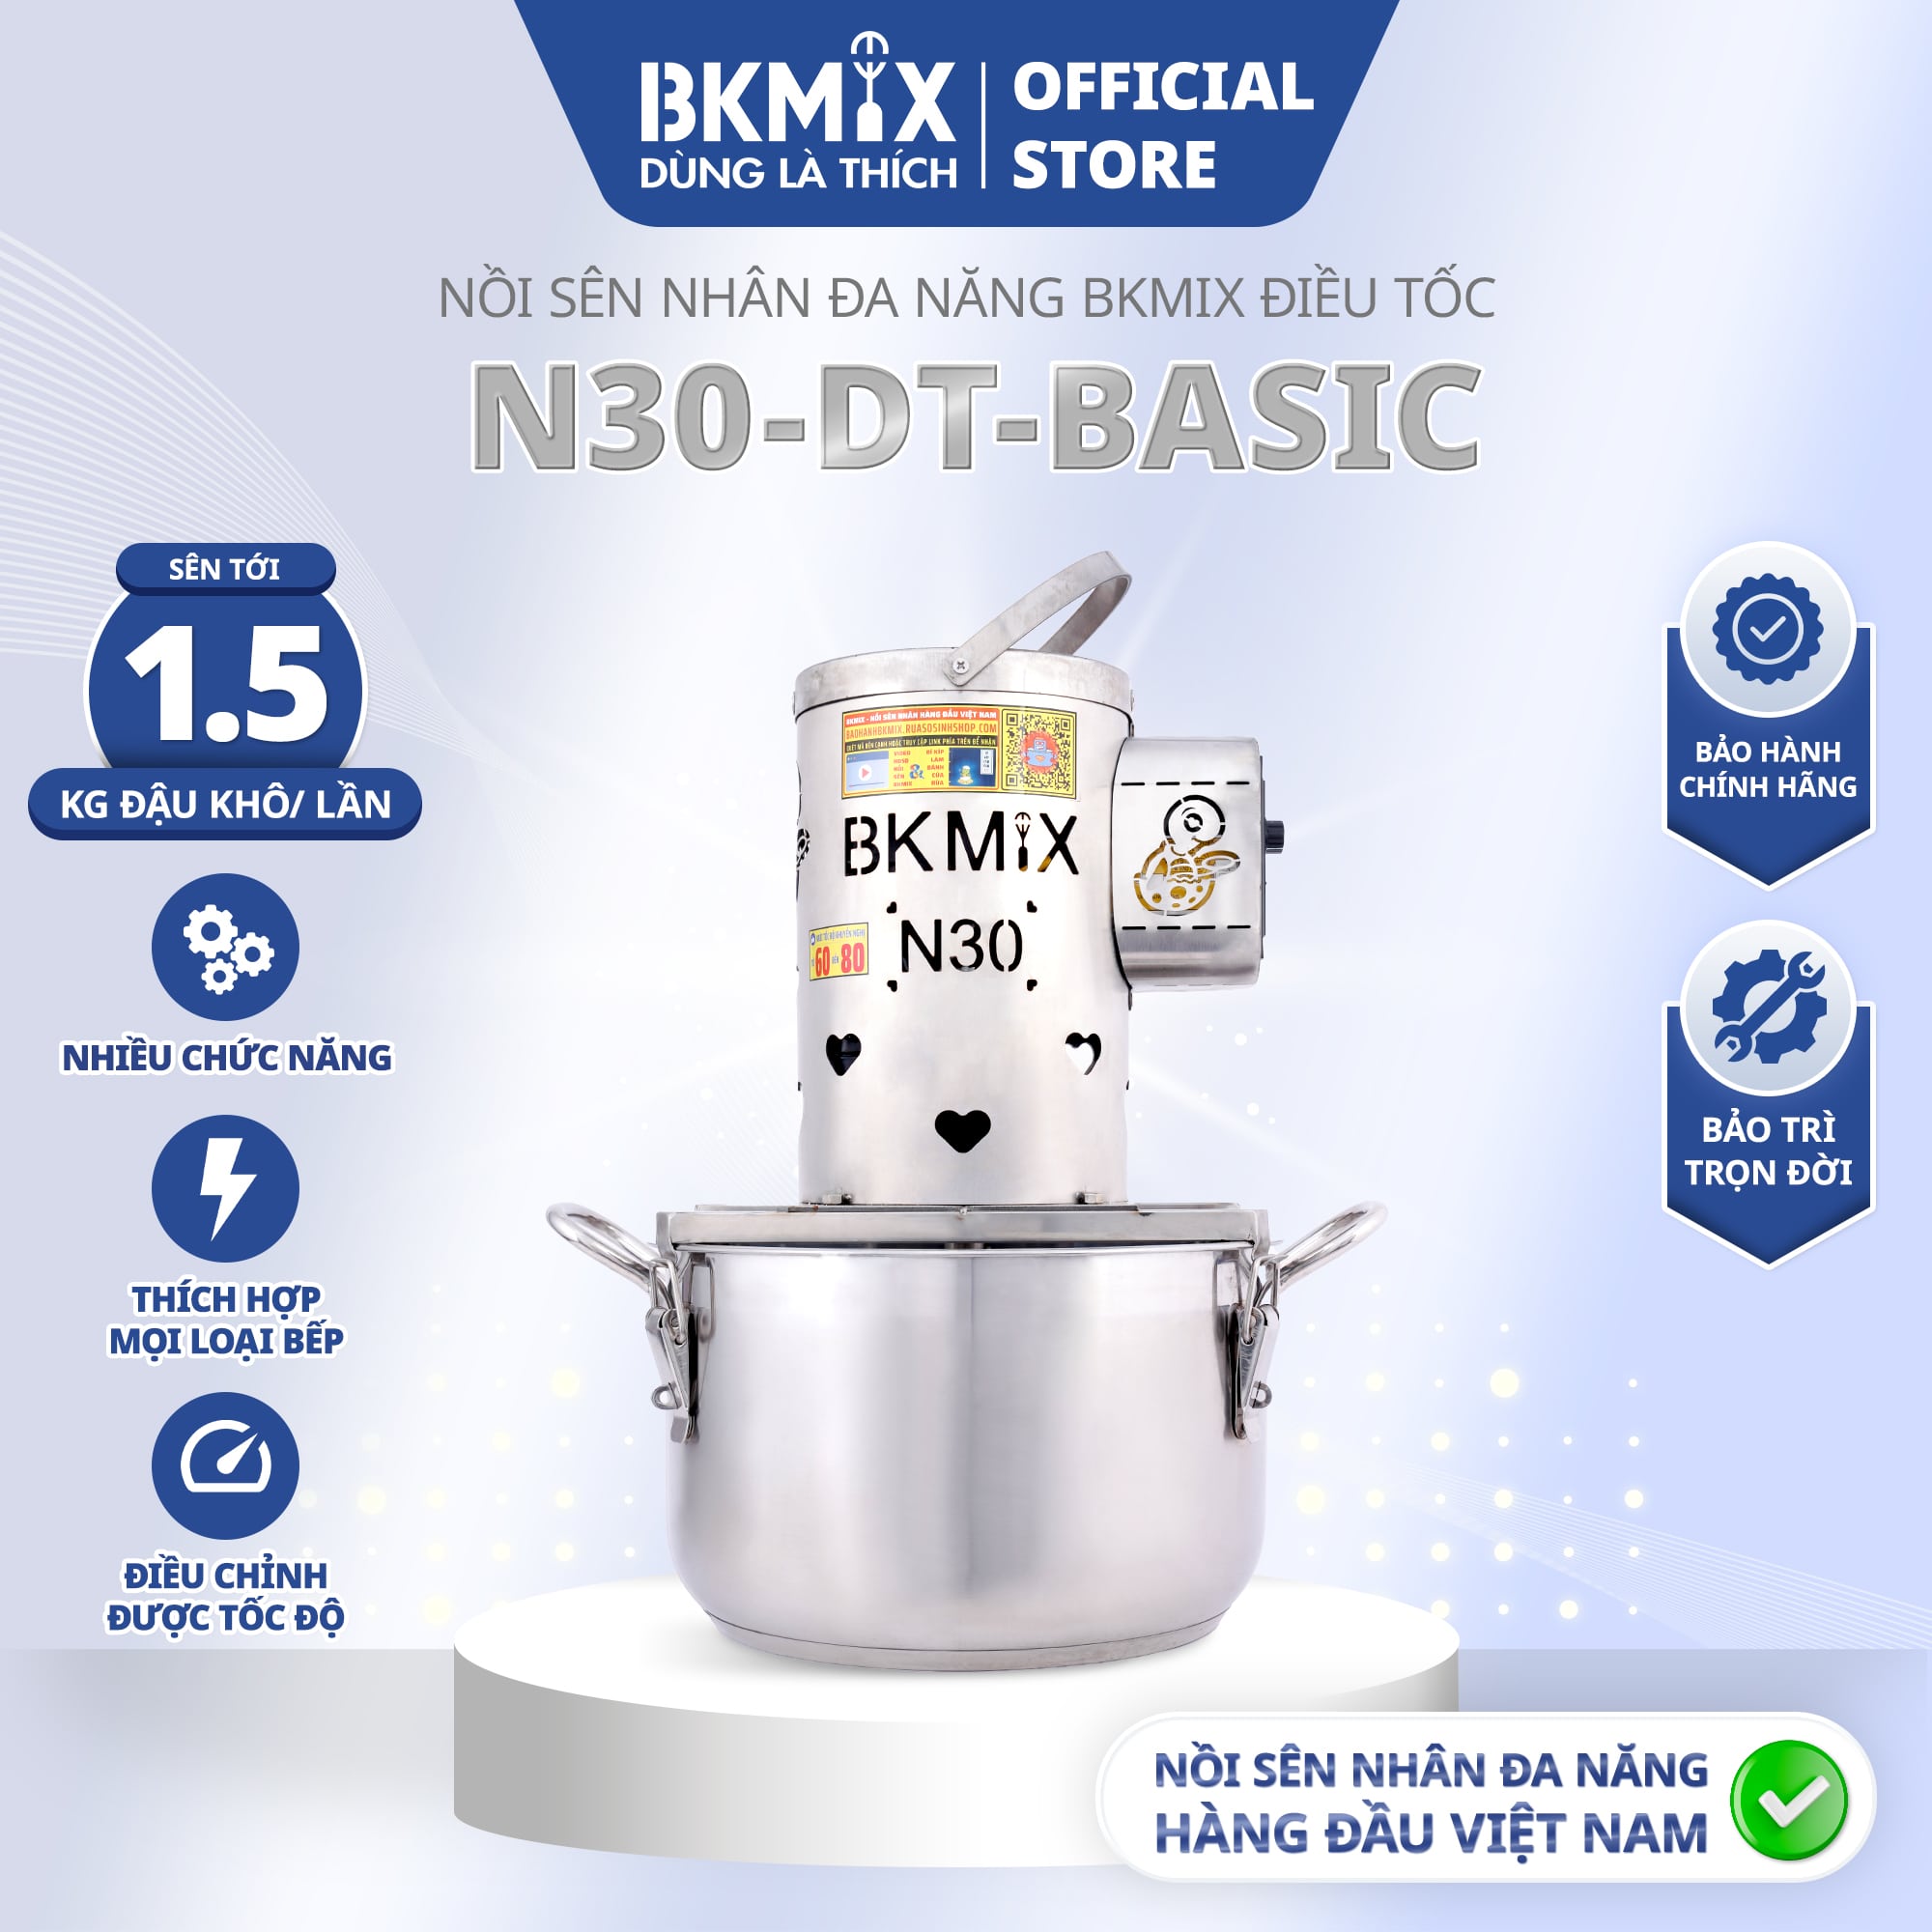 Nồi Sên Nhân Đa Năng BKMIX N30-DT-BASIC  Điều Tốc Cao Cấp Full phụ kiện